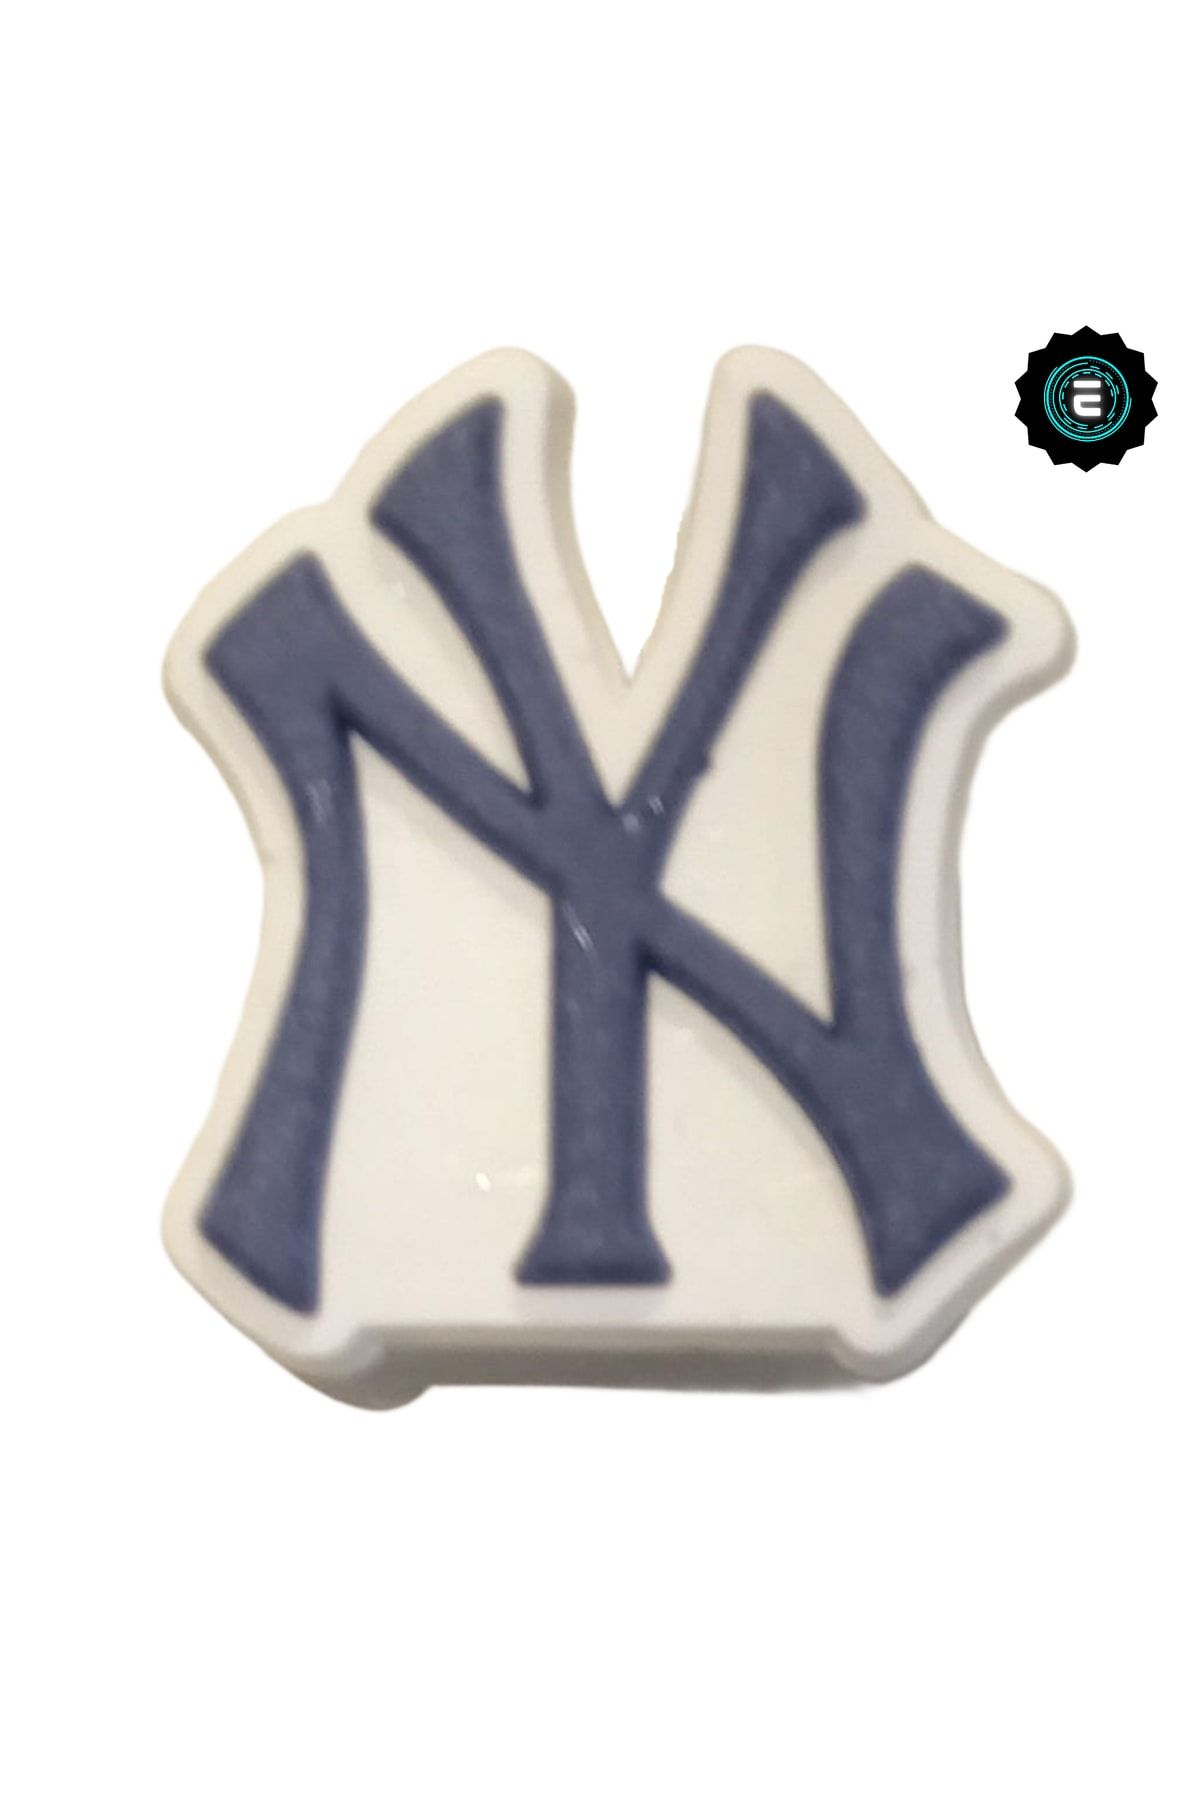 Crocs Terlik Süsü New York Yankees Logo/ Jibbitz / Charm/anahtarlık Süsü/bileklik Takıları